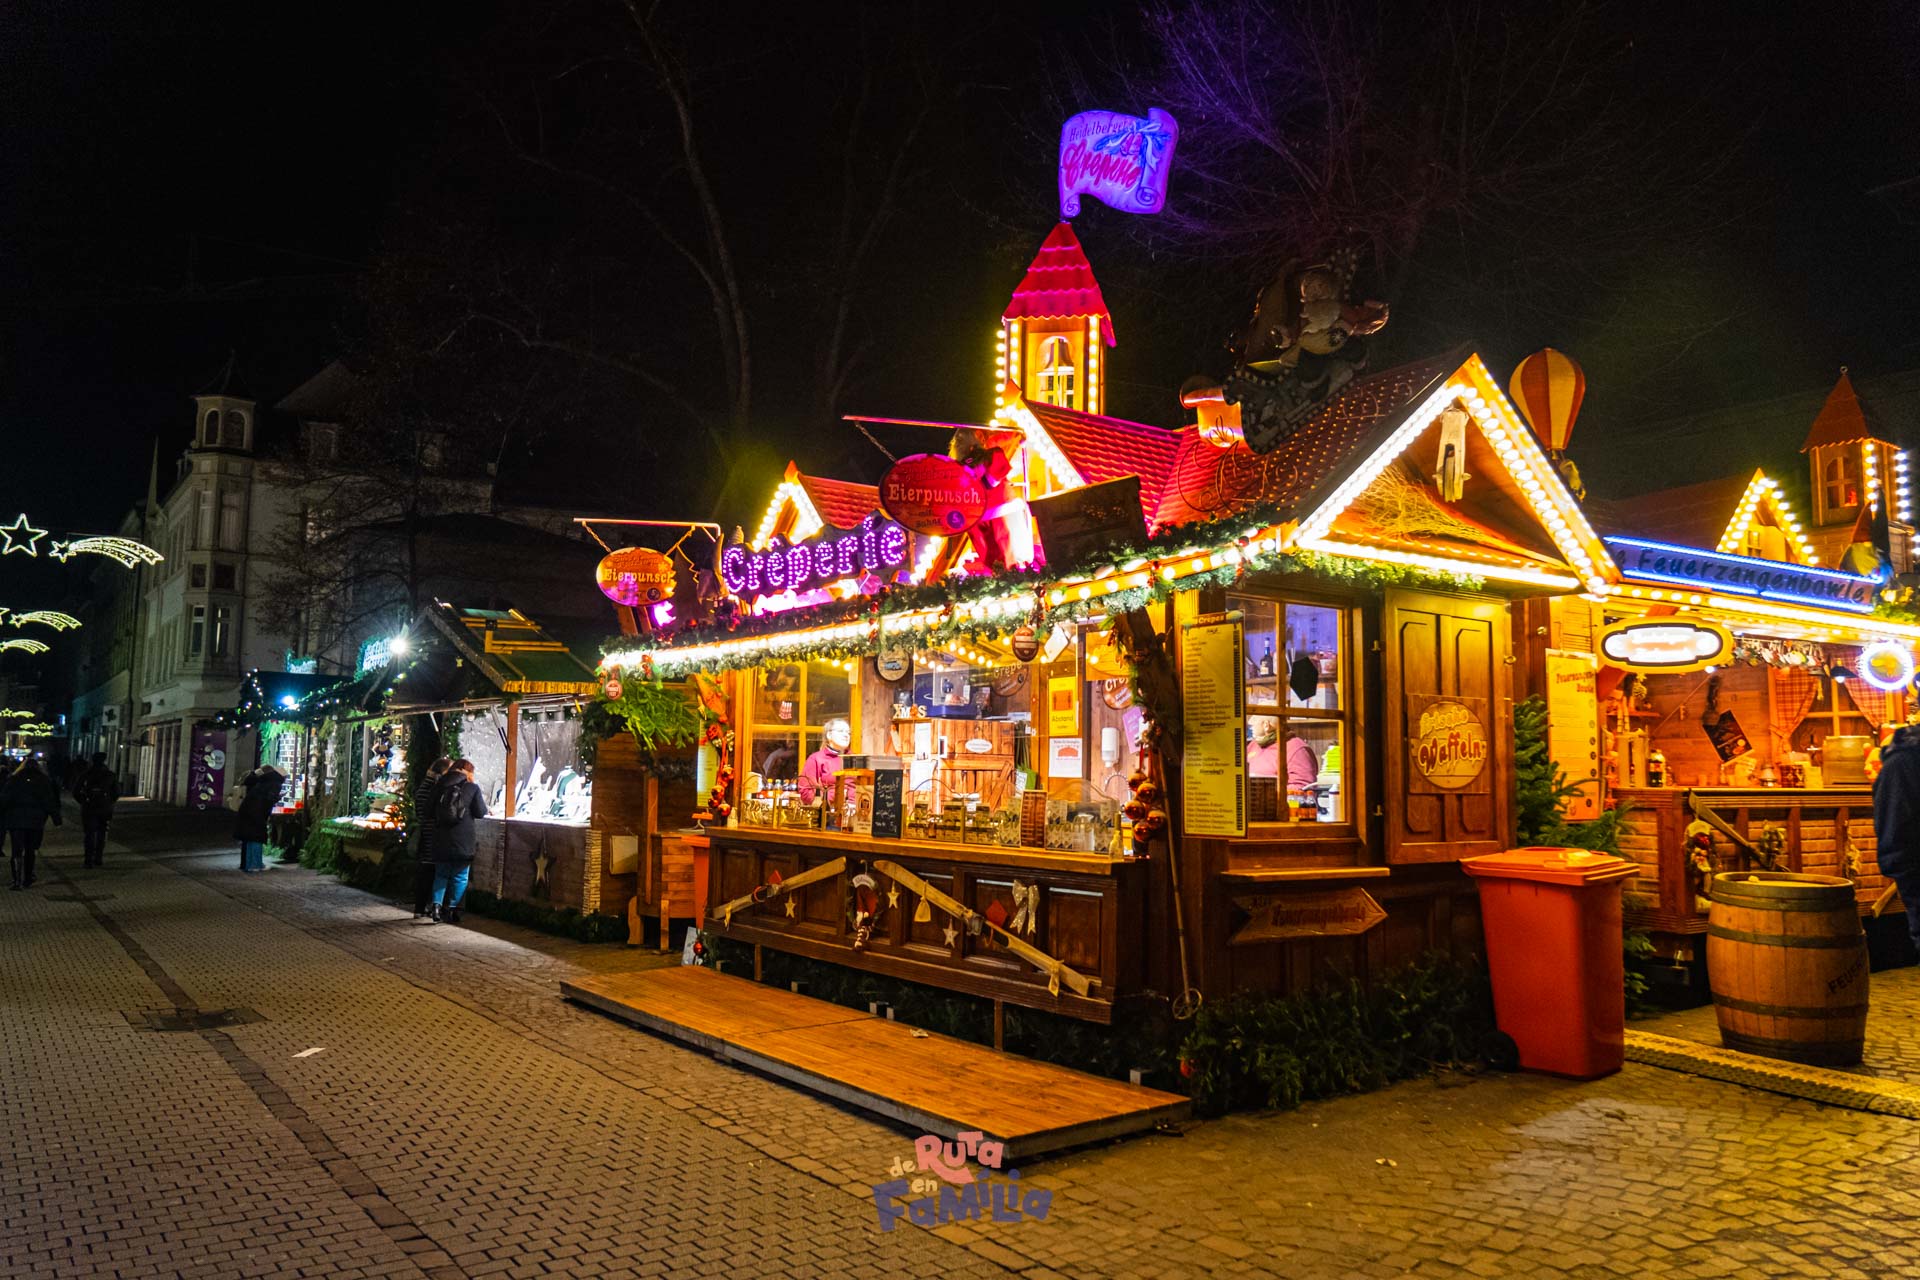 Heidelberg en Navidad, todo sobre sus mercados navideños